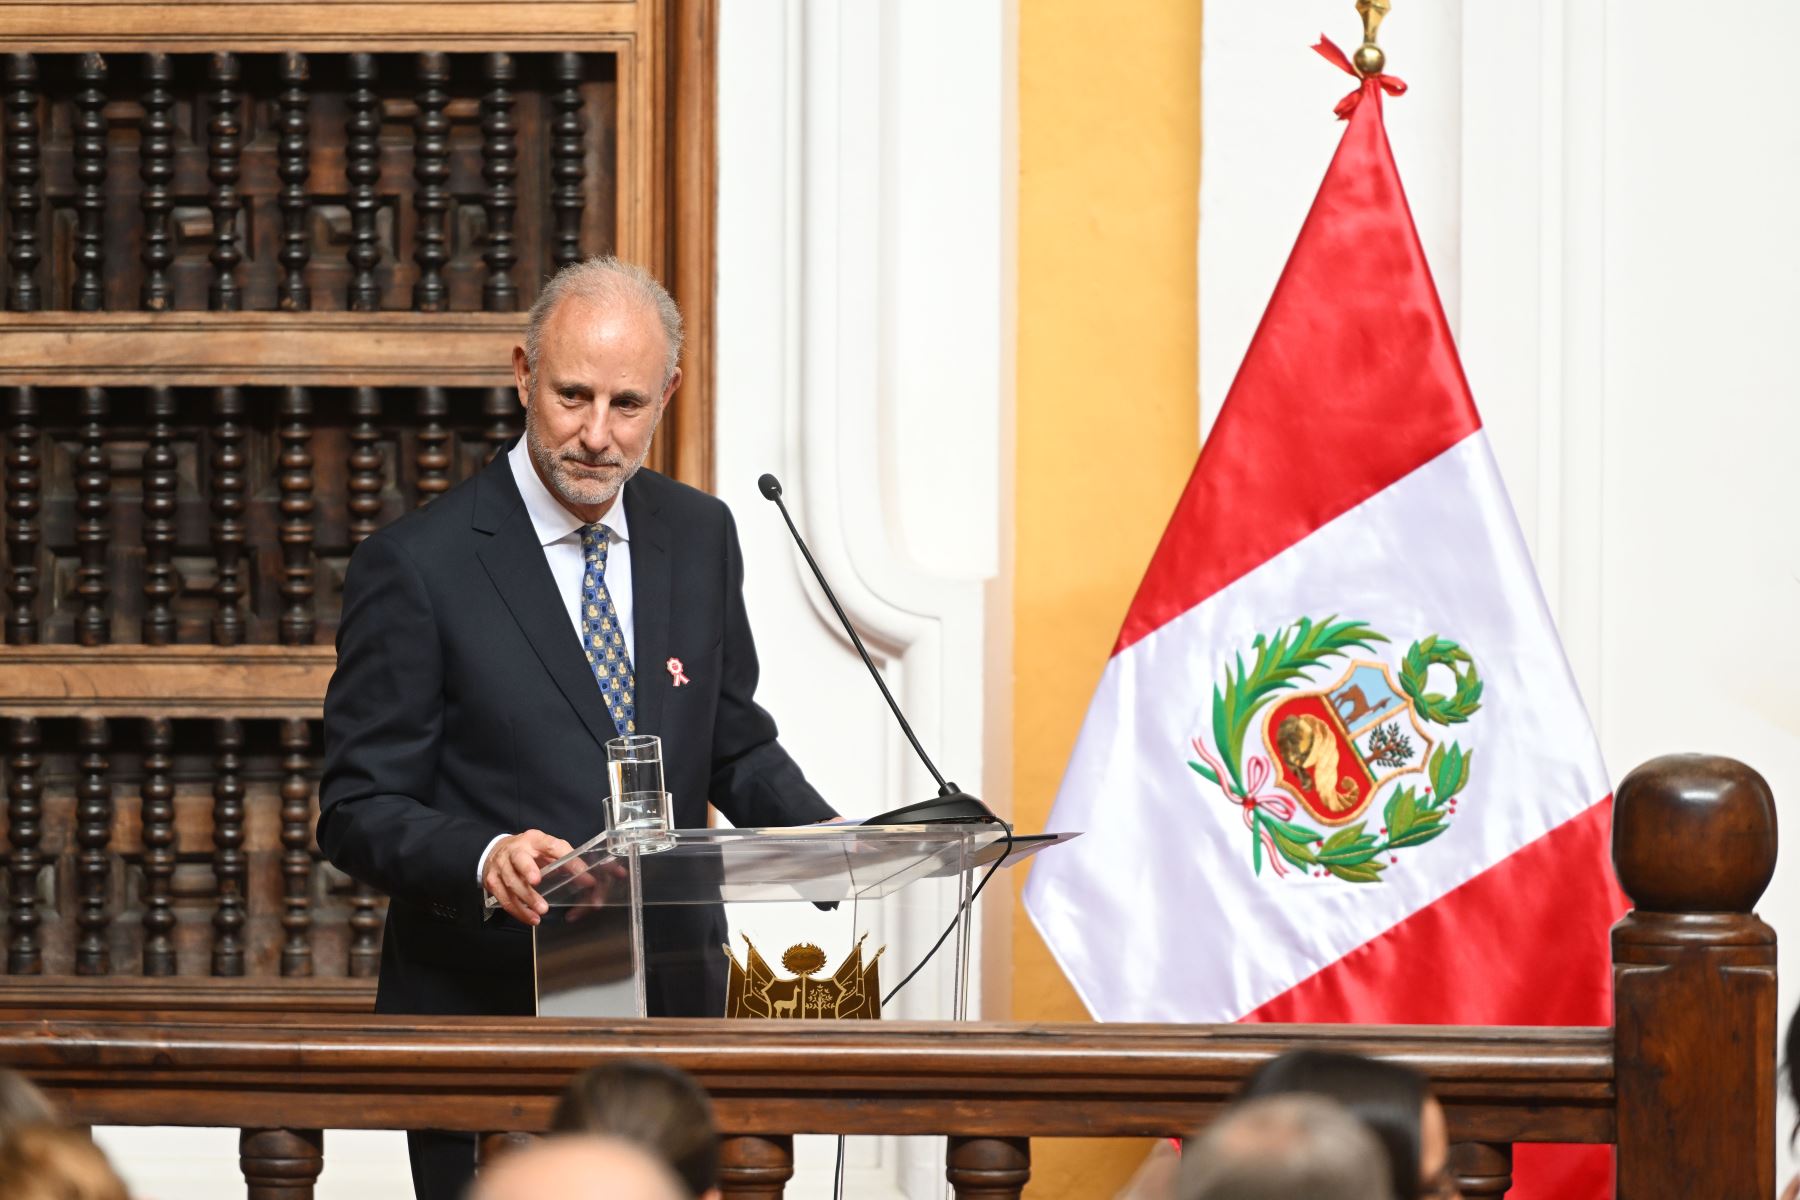 Canciller participará en Consejo de Ministros de la Alianza del Pacífico en Chile